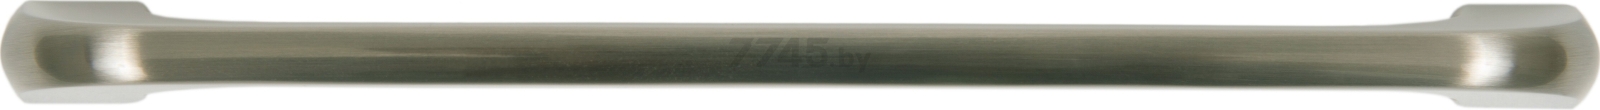 Ручка мебельная скоба BOYARD Jetline RS219BSN.4/160 атласный сатиновый никель - Фото 3